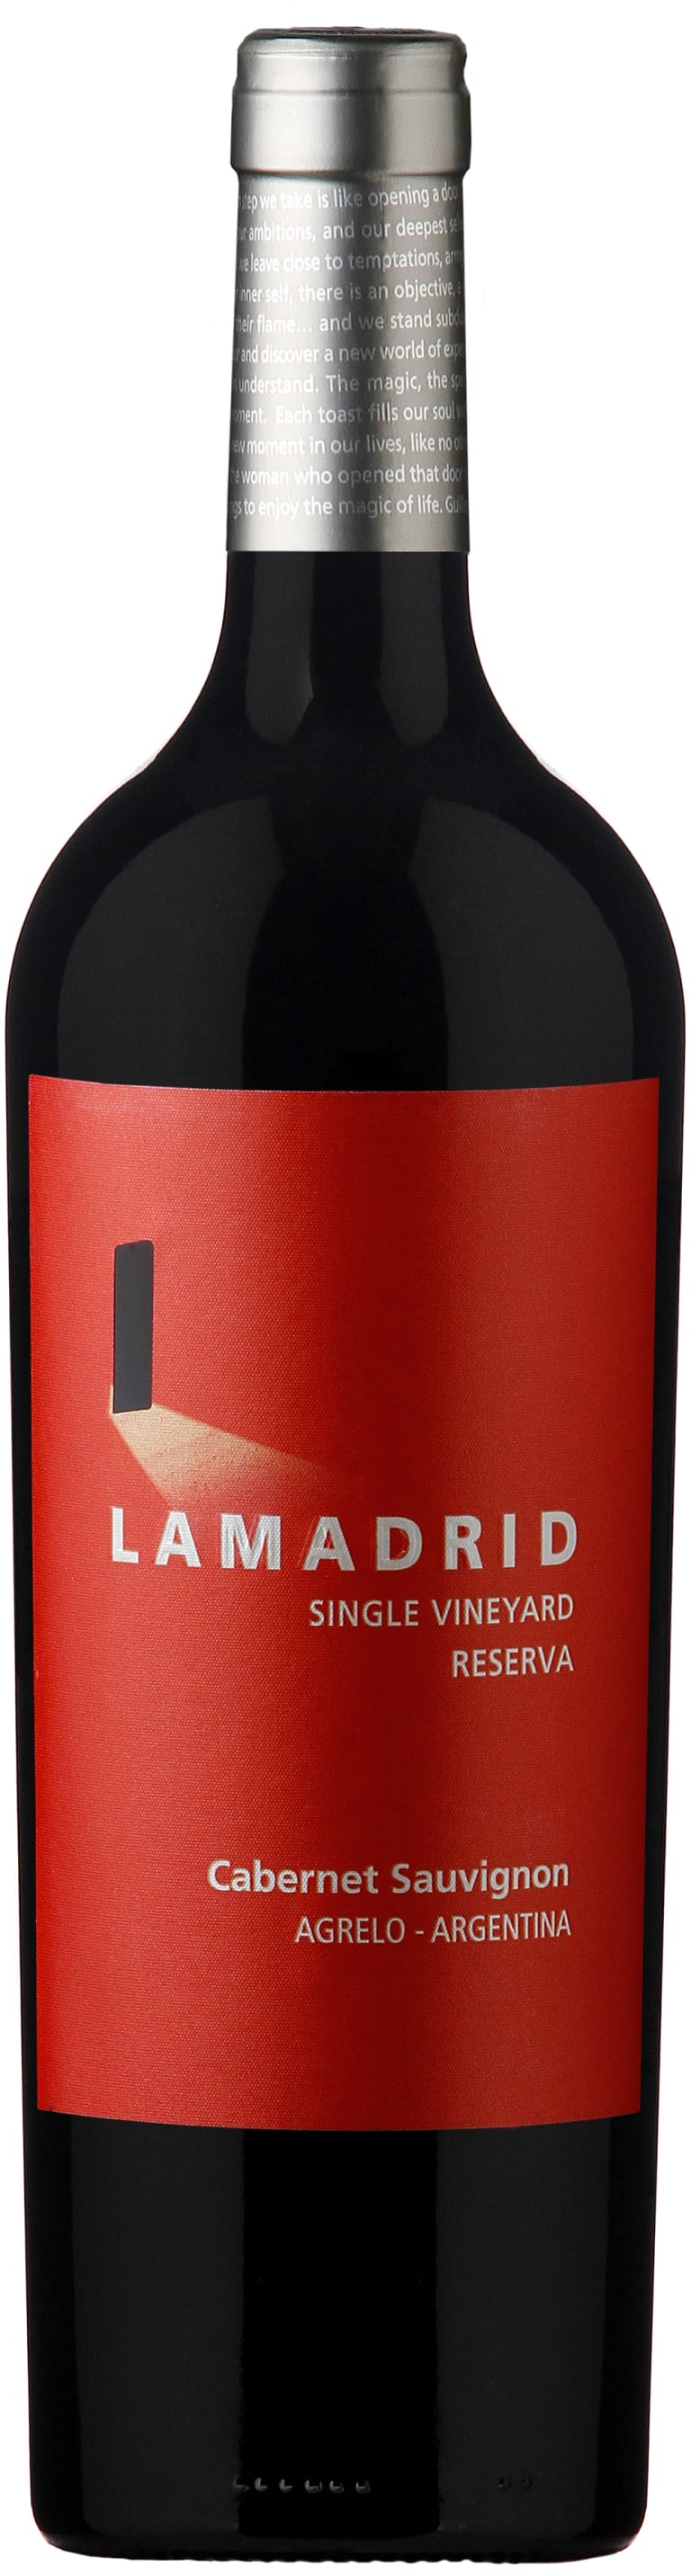 Lamadrid Estate Wines Cabernet Sauvignon Reserva 2017